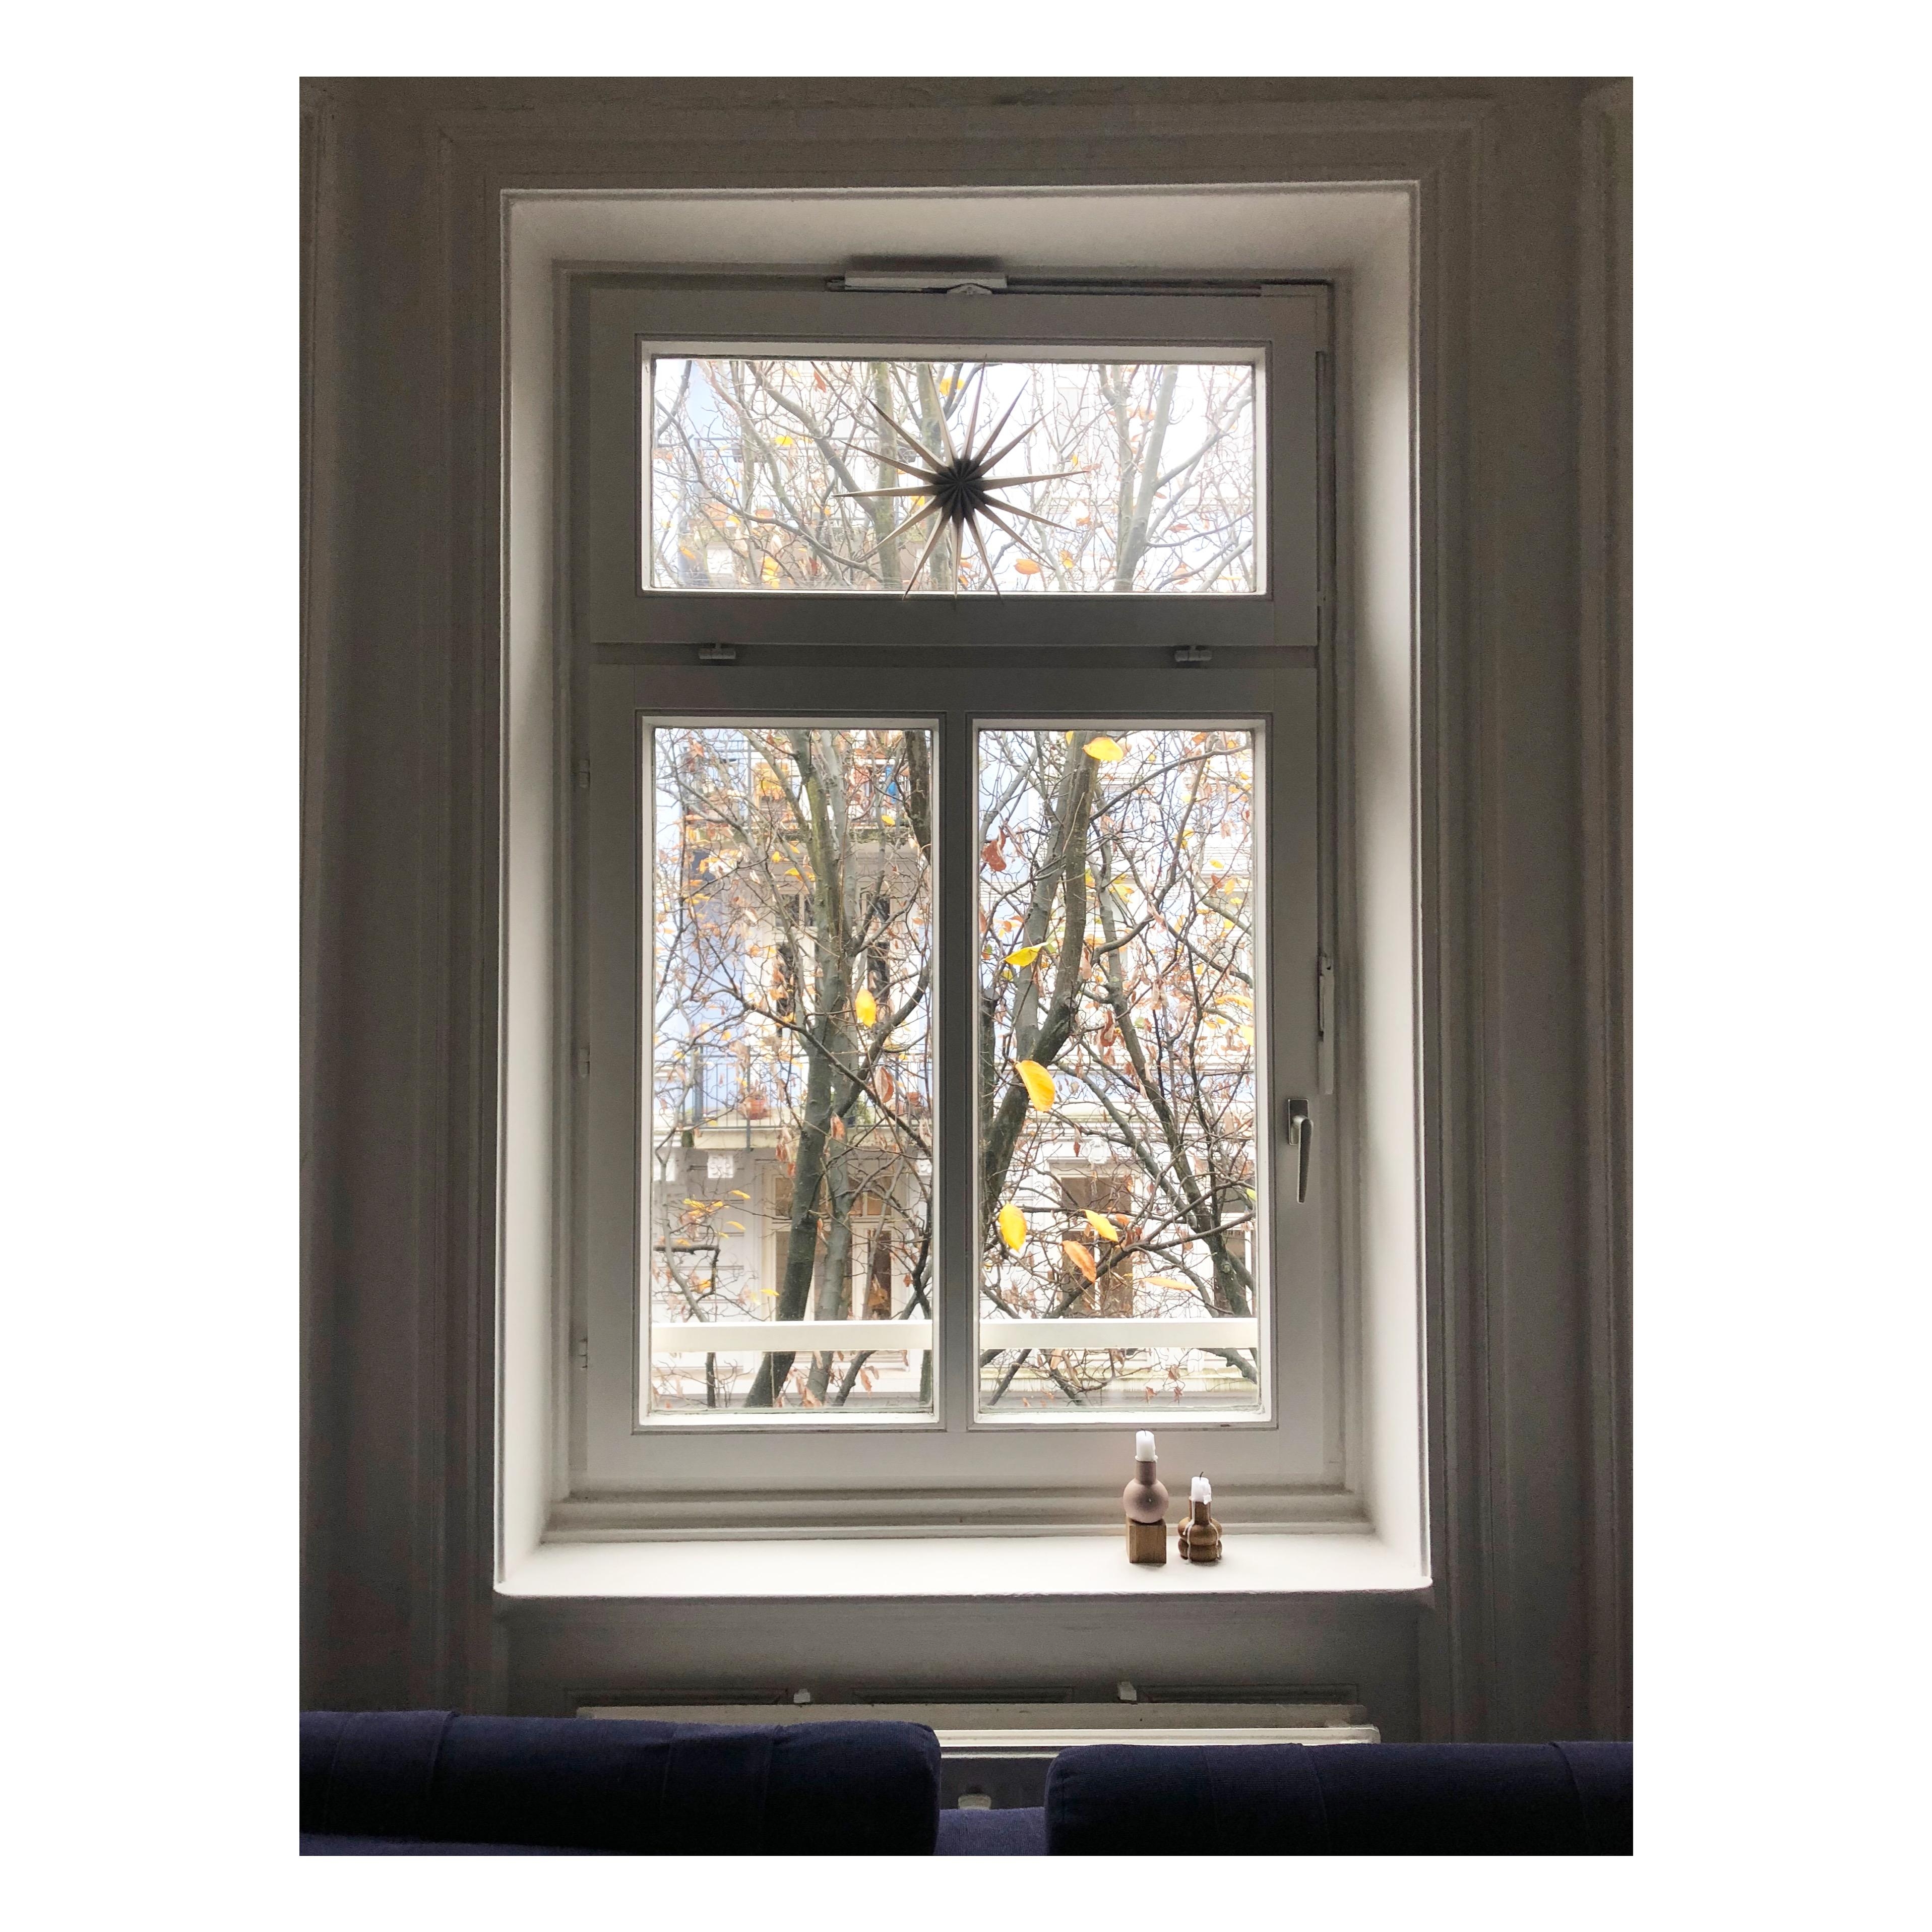 Window
#coldoutside
#cozy
#winter